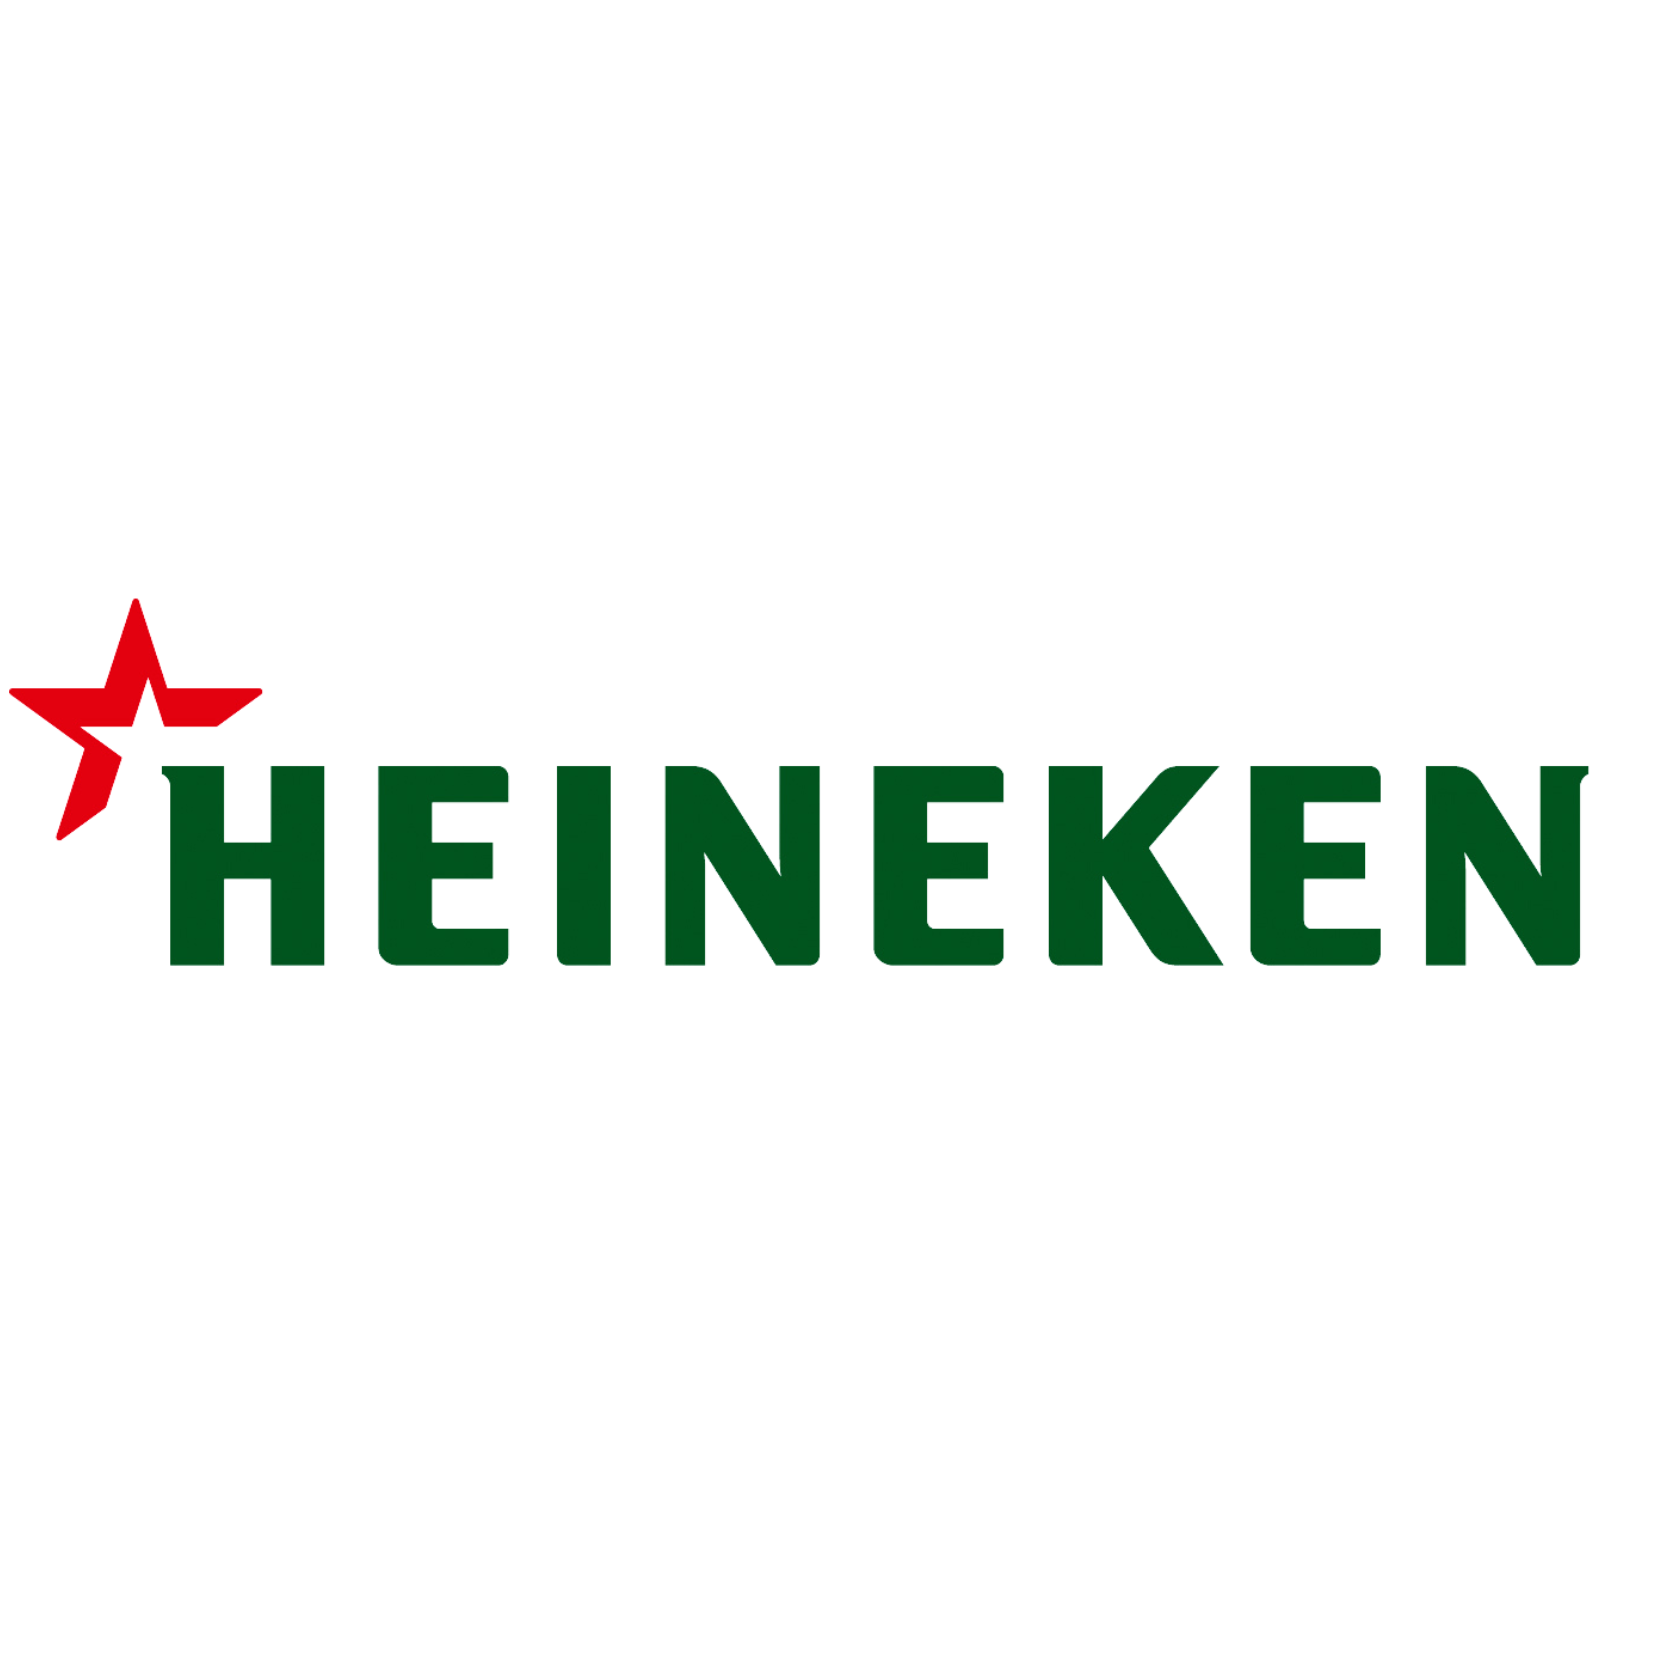 Heineken Image